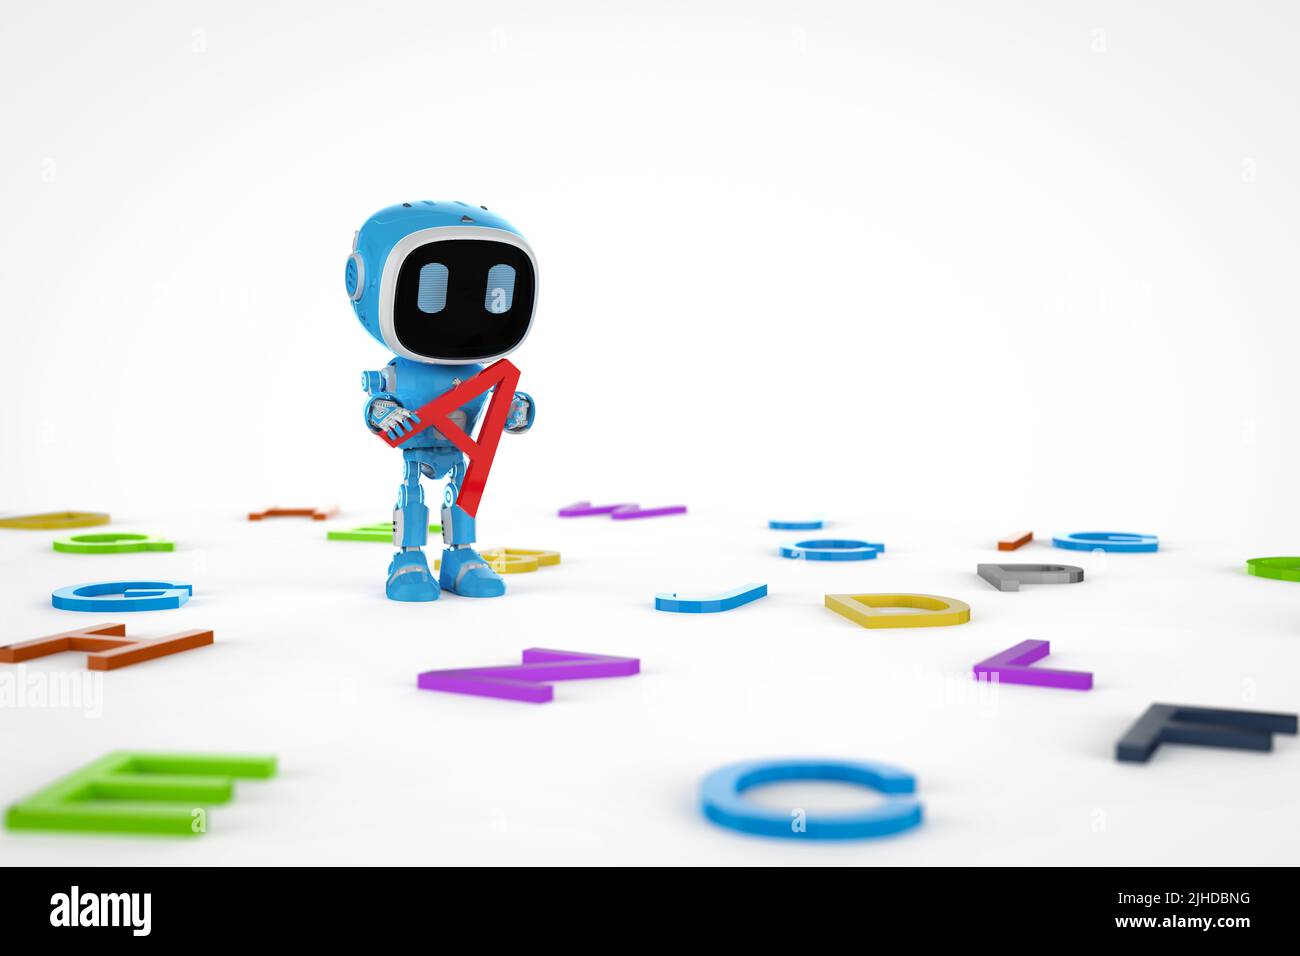 Concetto di apprendimento automatico con 3D rendering dell'apprendimento di piccoli robot con alfabeti Foto Stock